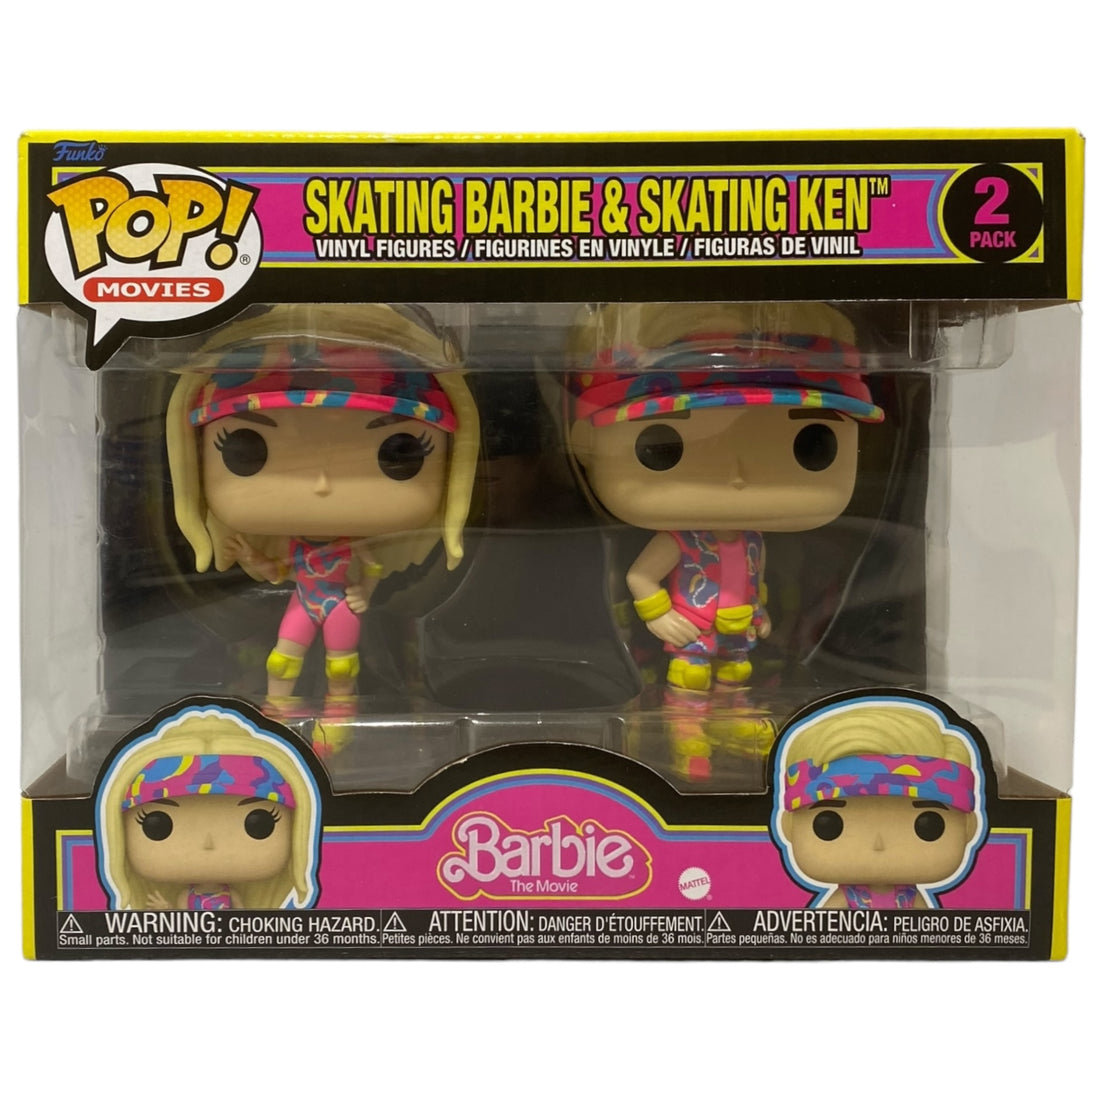 Skating Barbie & Skating Ken 2 Pack Funko Pop